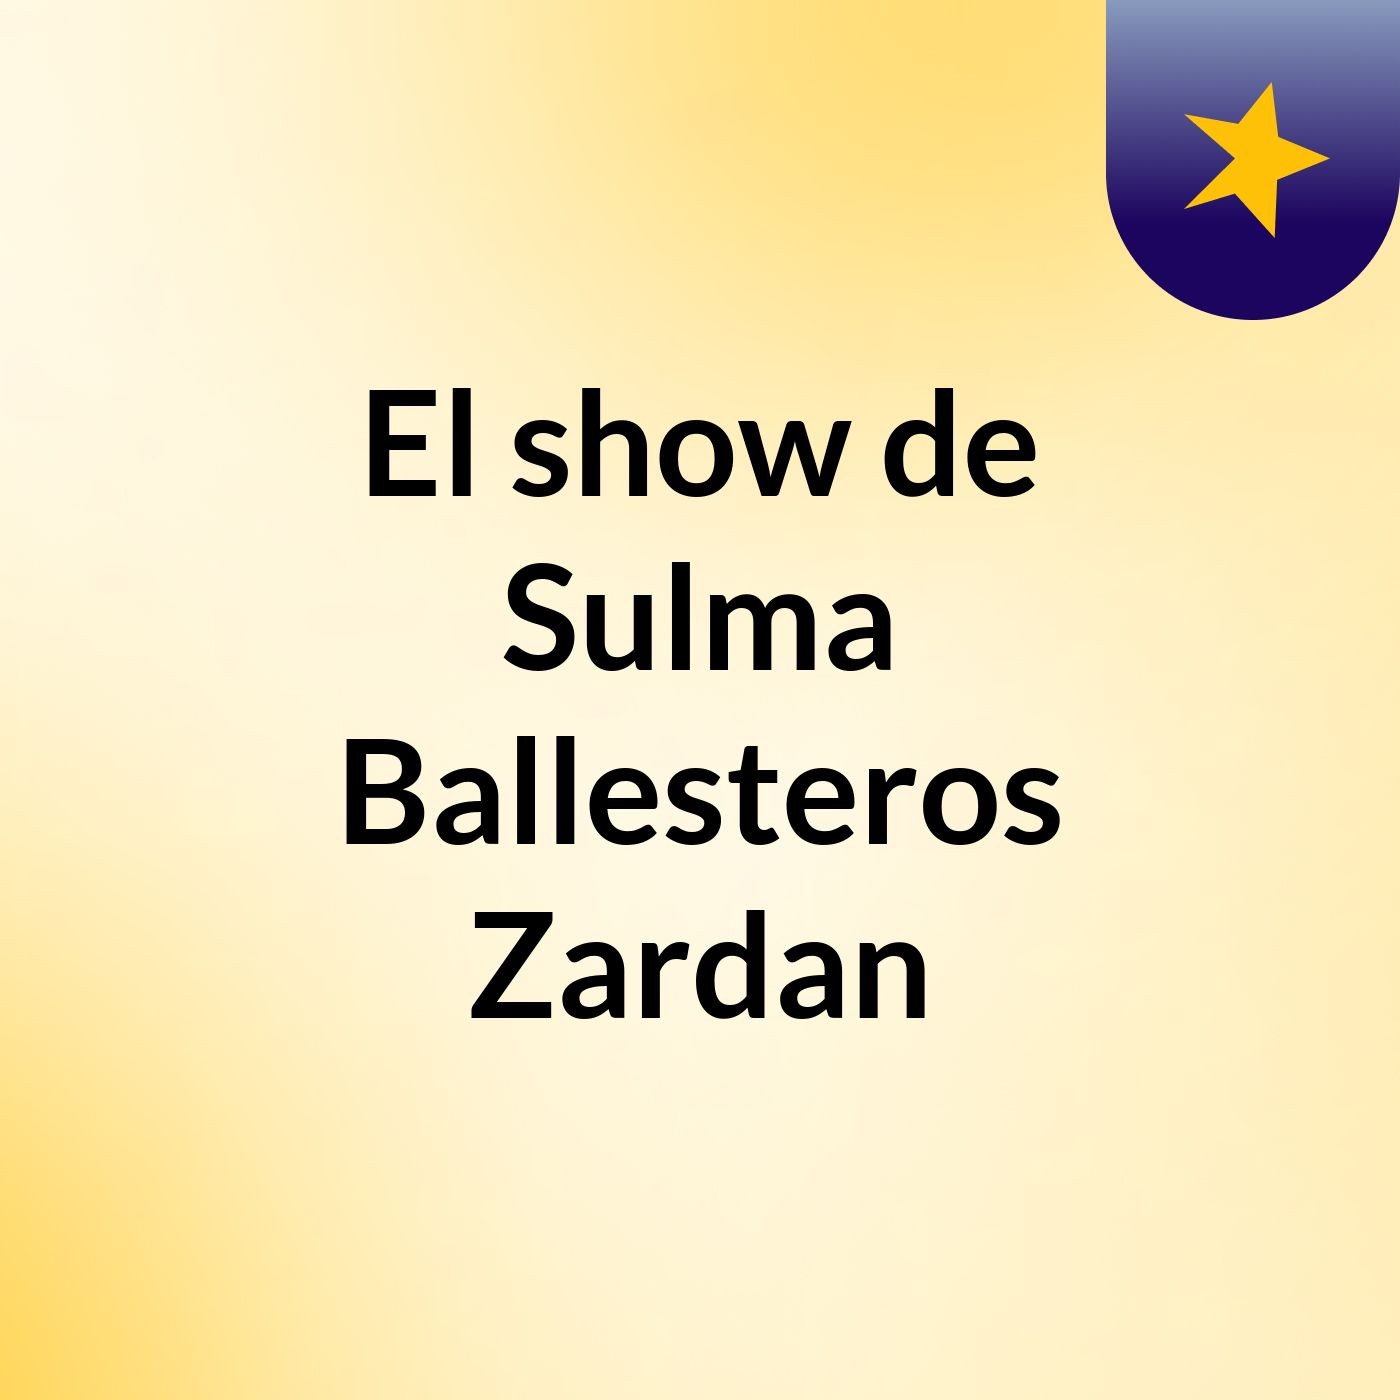 El show de Sulma Ballesteros Zardan